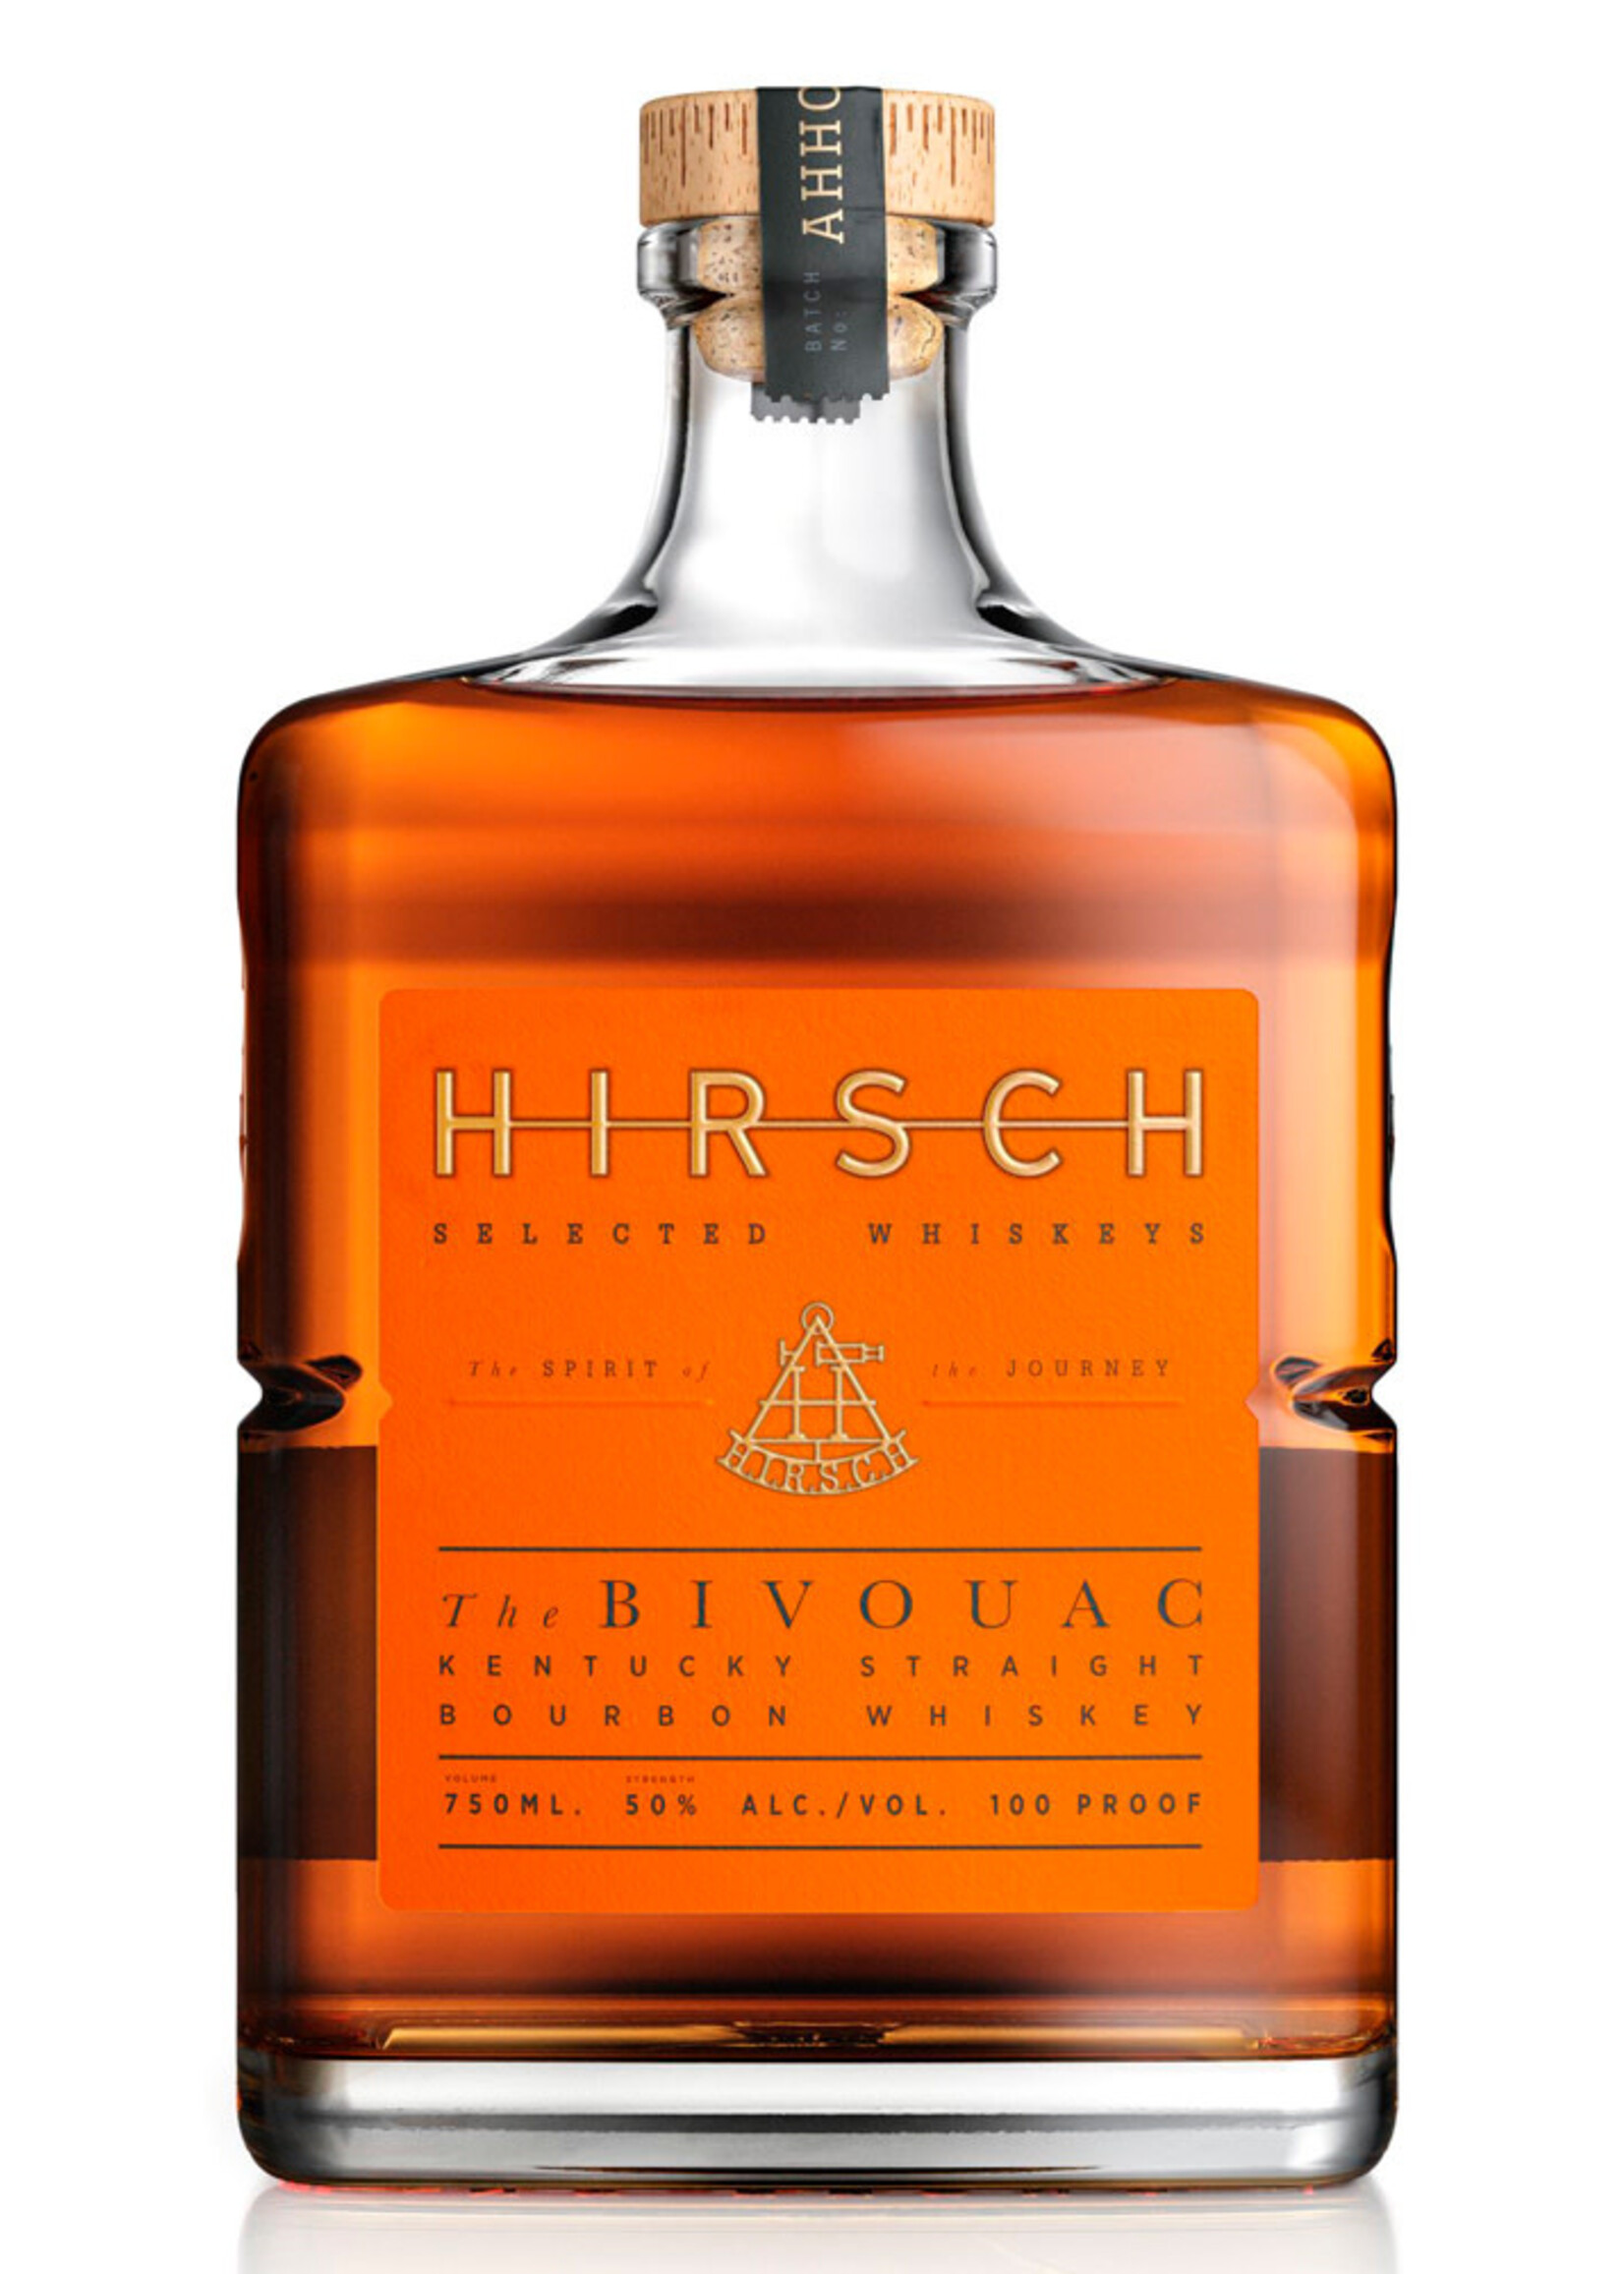 Hirsch Hirsch "The Bivouac" Straight Bourbon 750ML